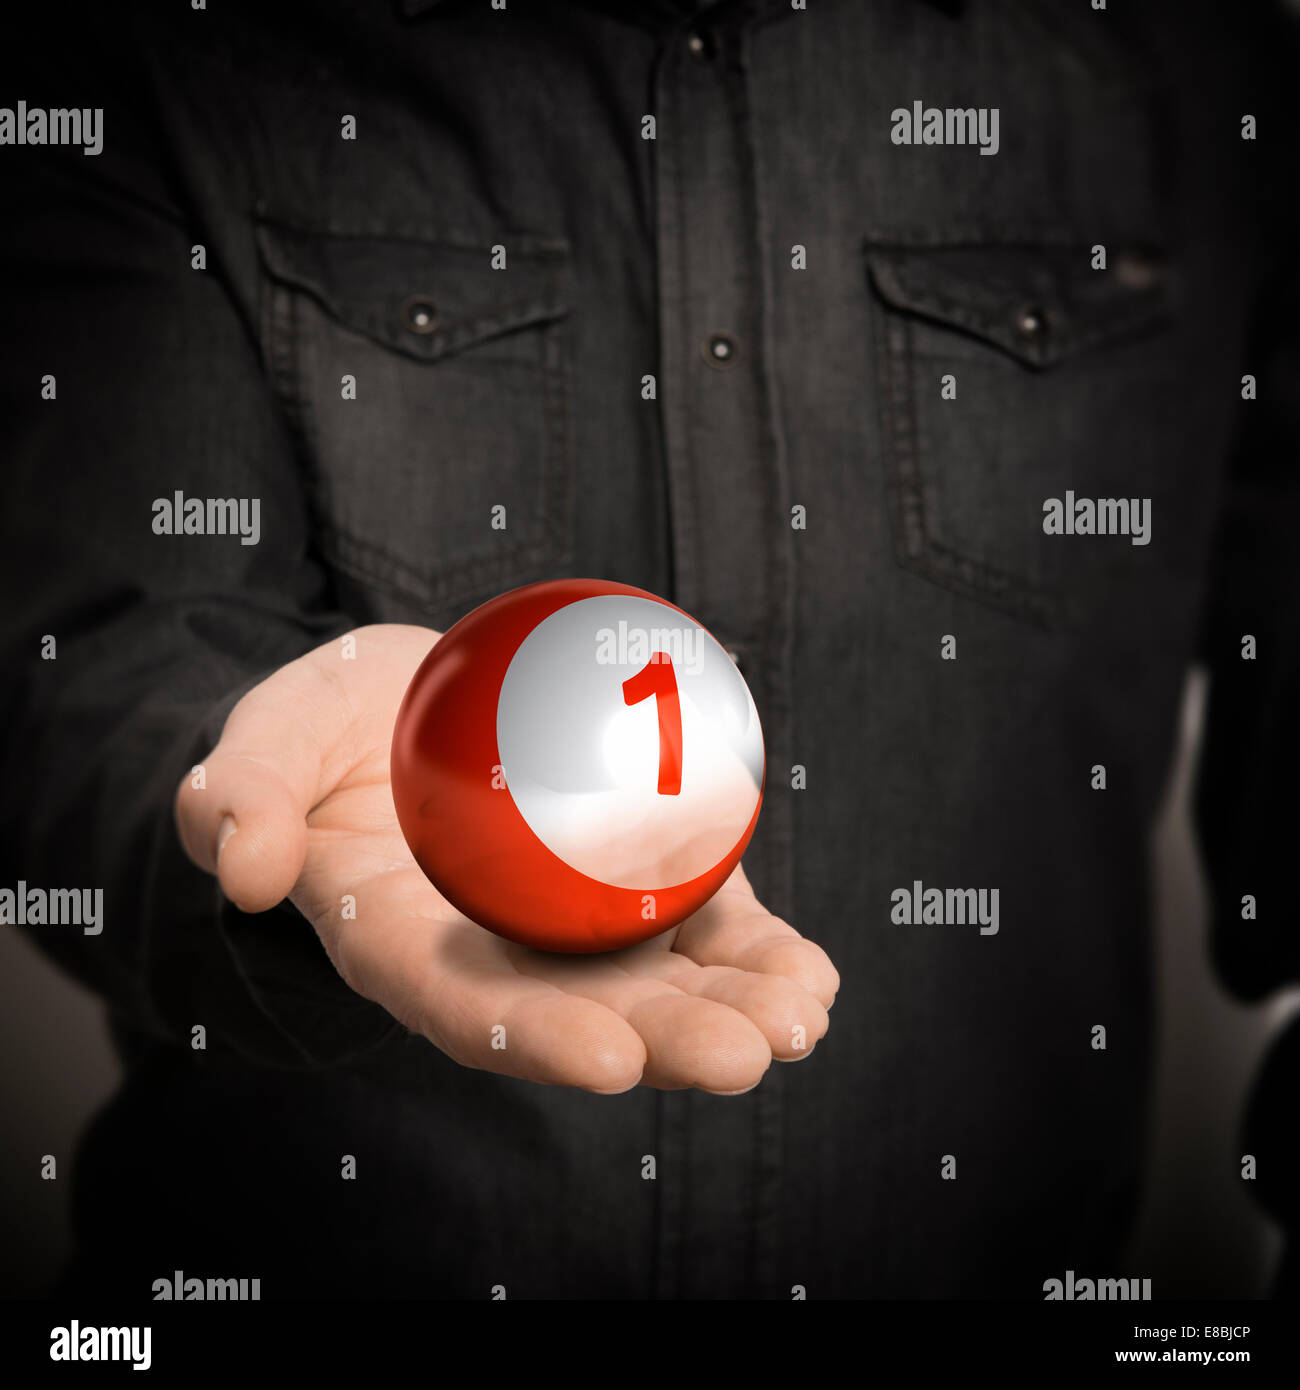 Man hand holding red ball avec un nombre plus blackbackground, concept de droit pour l'illustration de leader. Banque D'Images